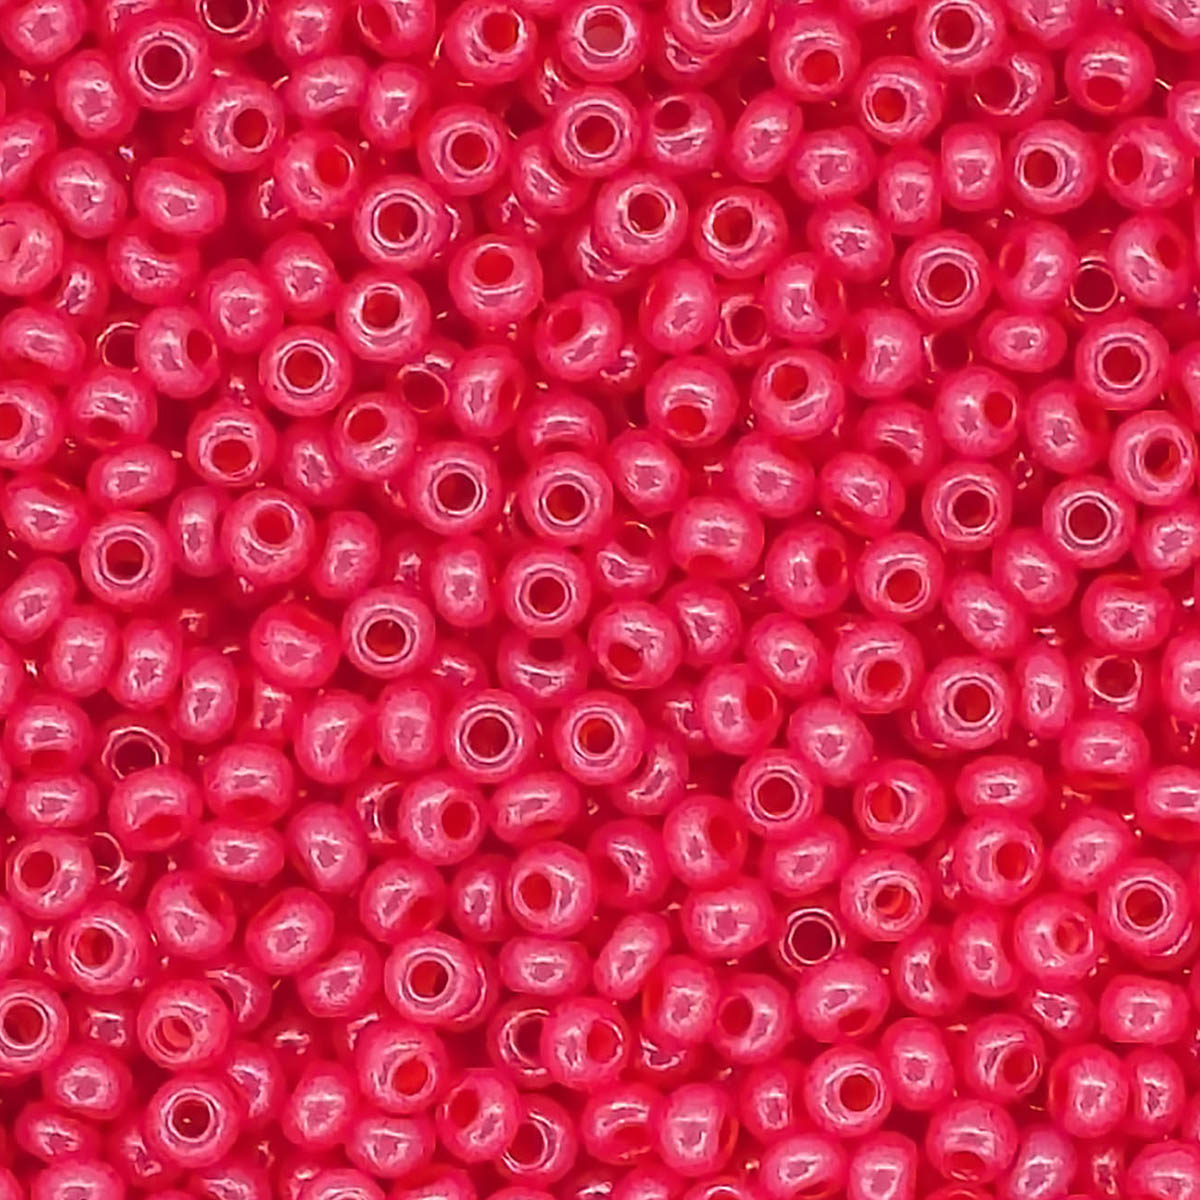 Бисер Preciosa чешский эффект алебастра блестящий с цветным центром 10/0 20 гр Прециоза 17398 розовый - фото 1